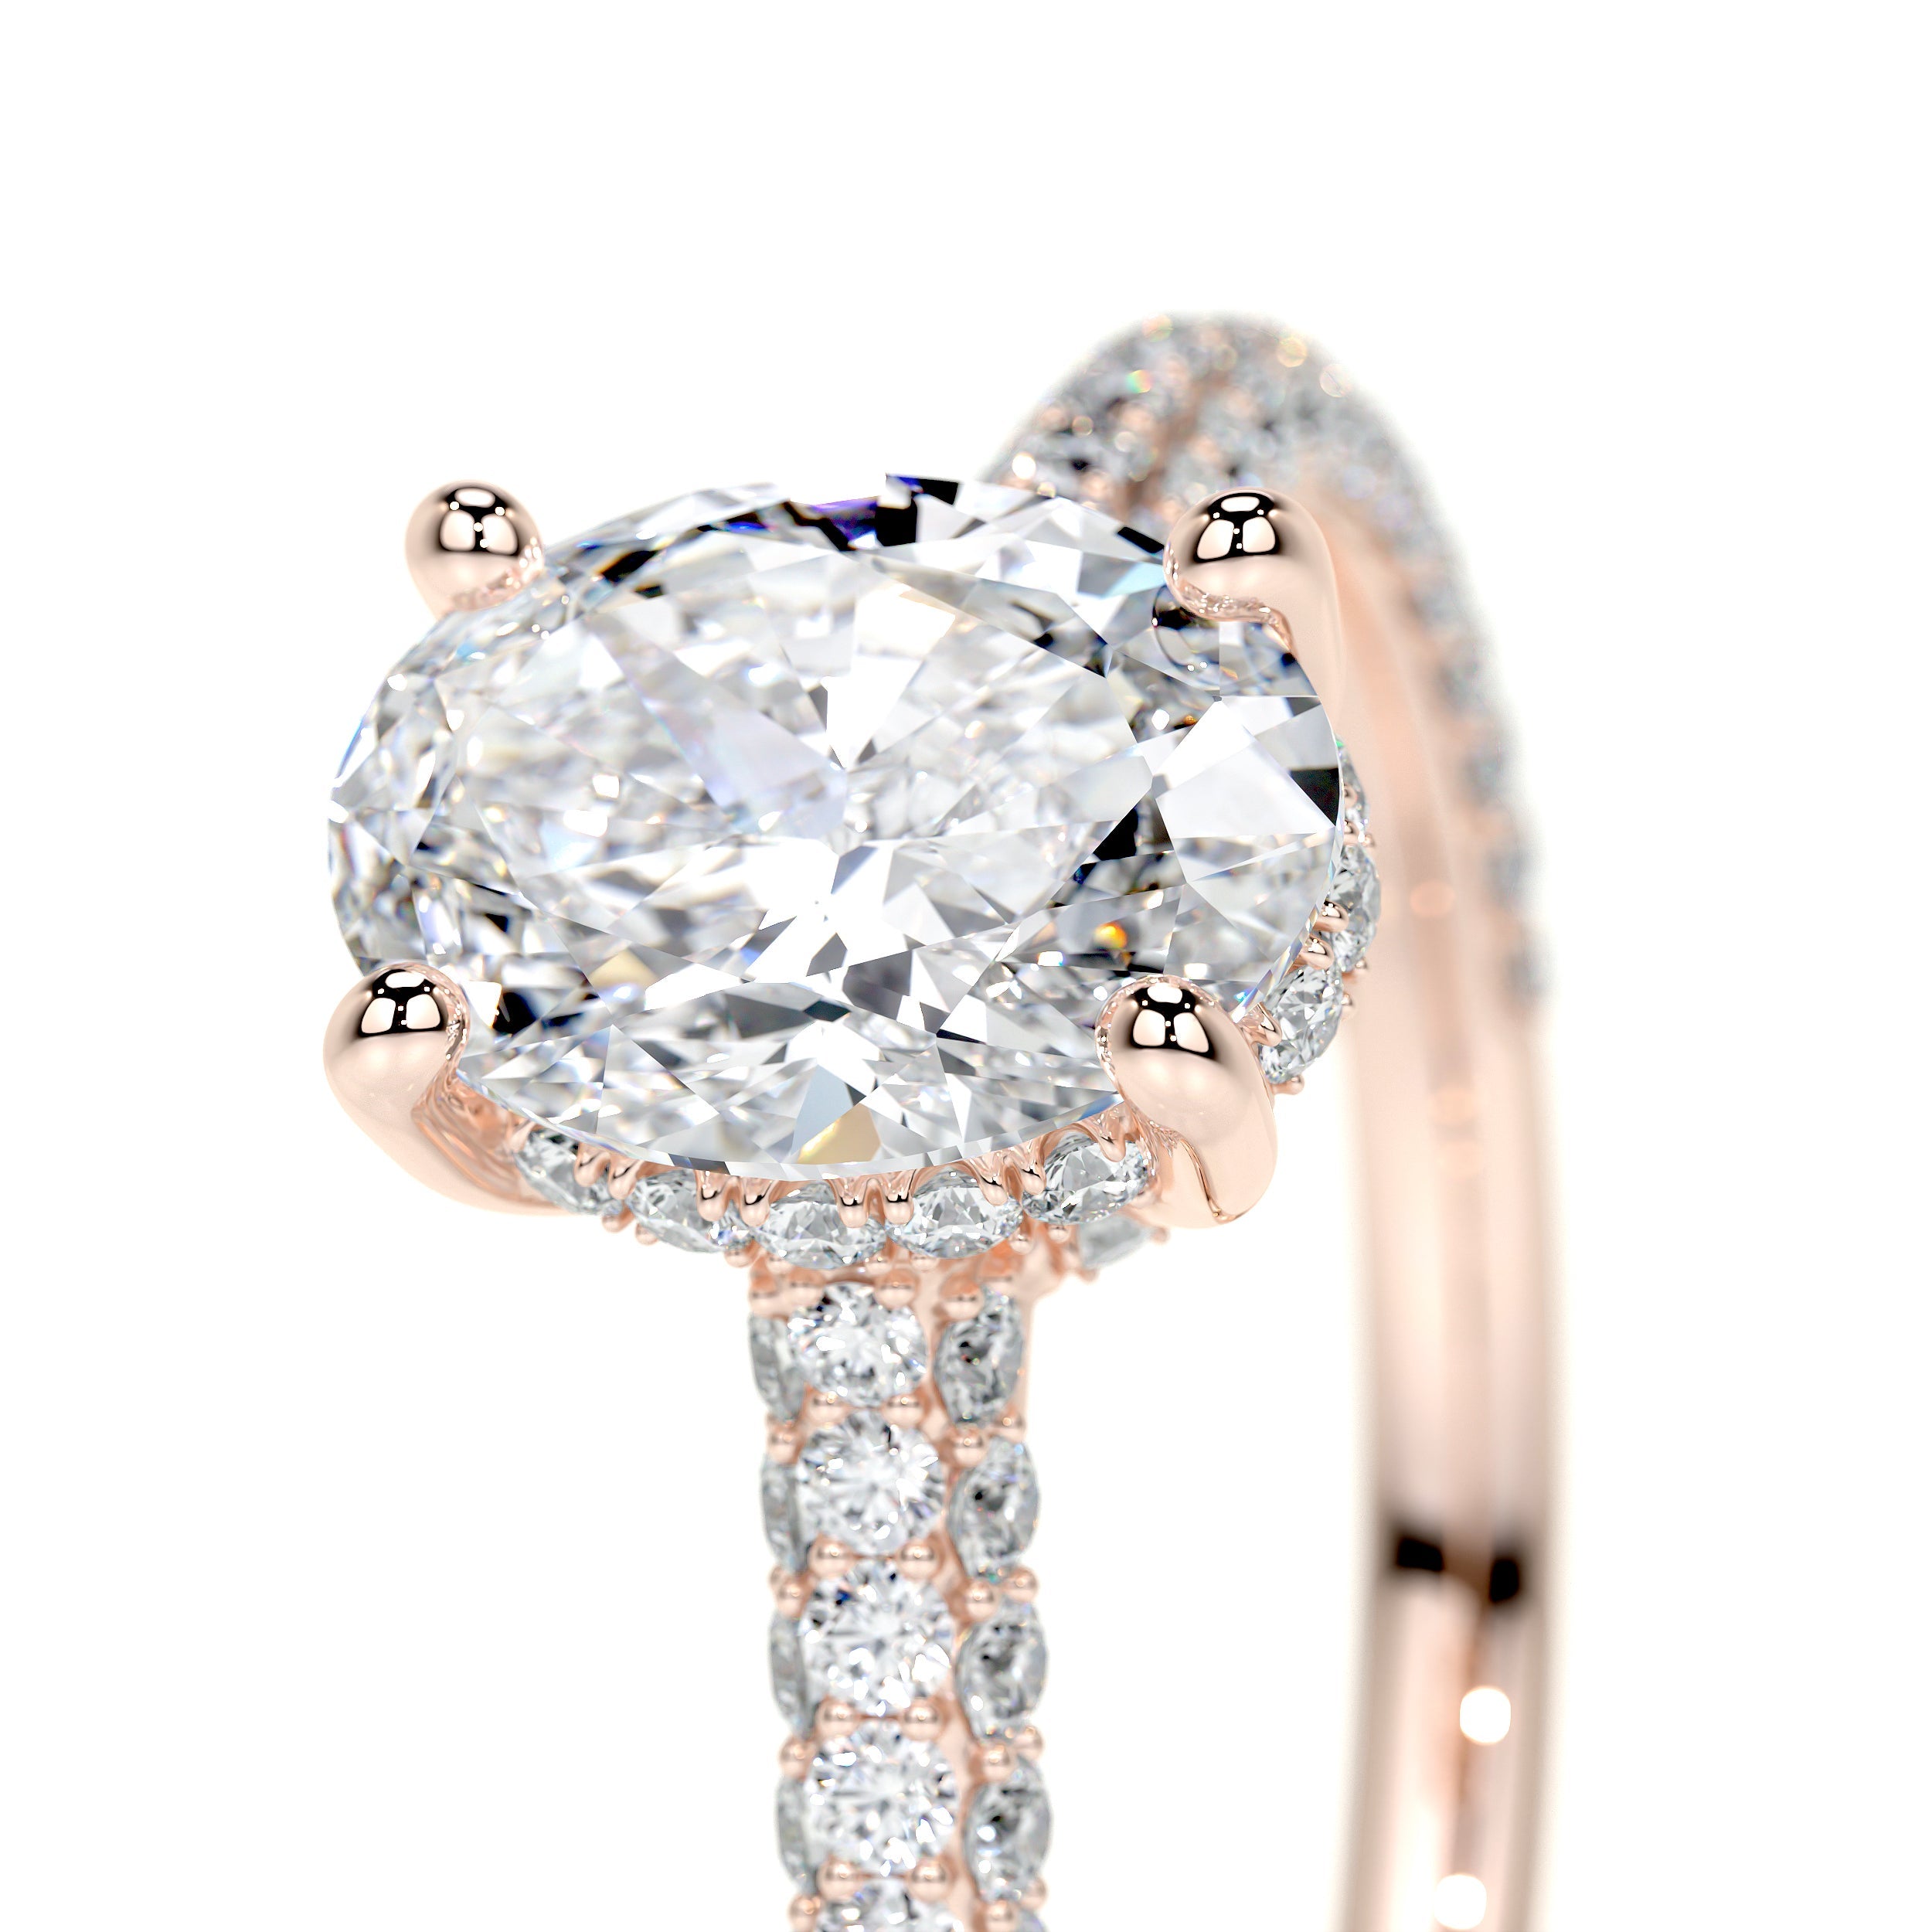 Rebecca Lab Grown Diamond Ring   (2.5 Carat) -14K Rose Gold